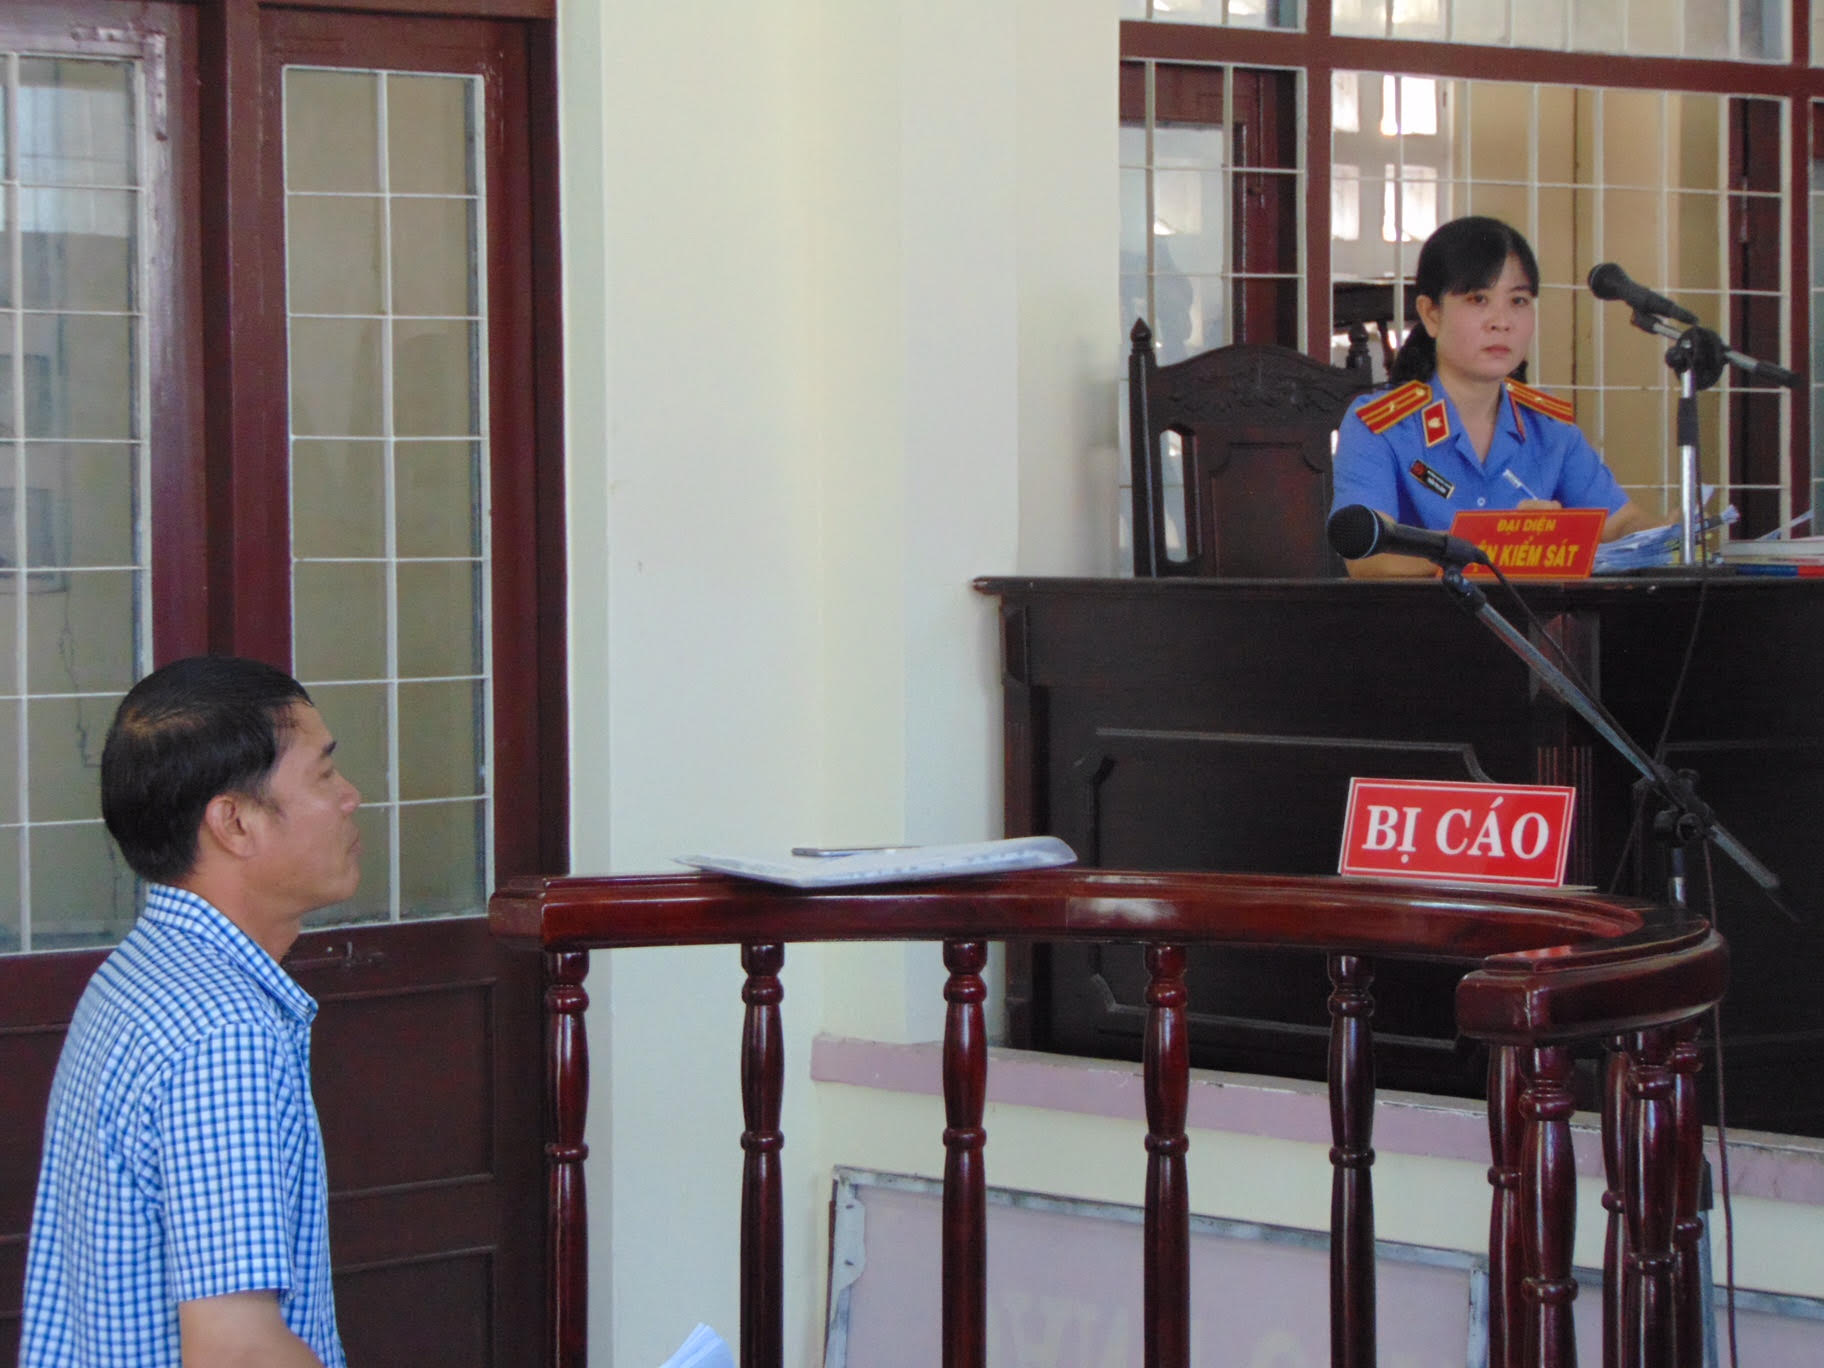  Bị cáo Nguyễn Minh Thế tại phiên tòa sơ thẩm đầy tranh cãi - Ảnh: Nguyễn Long